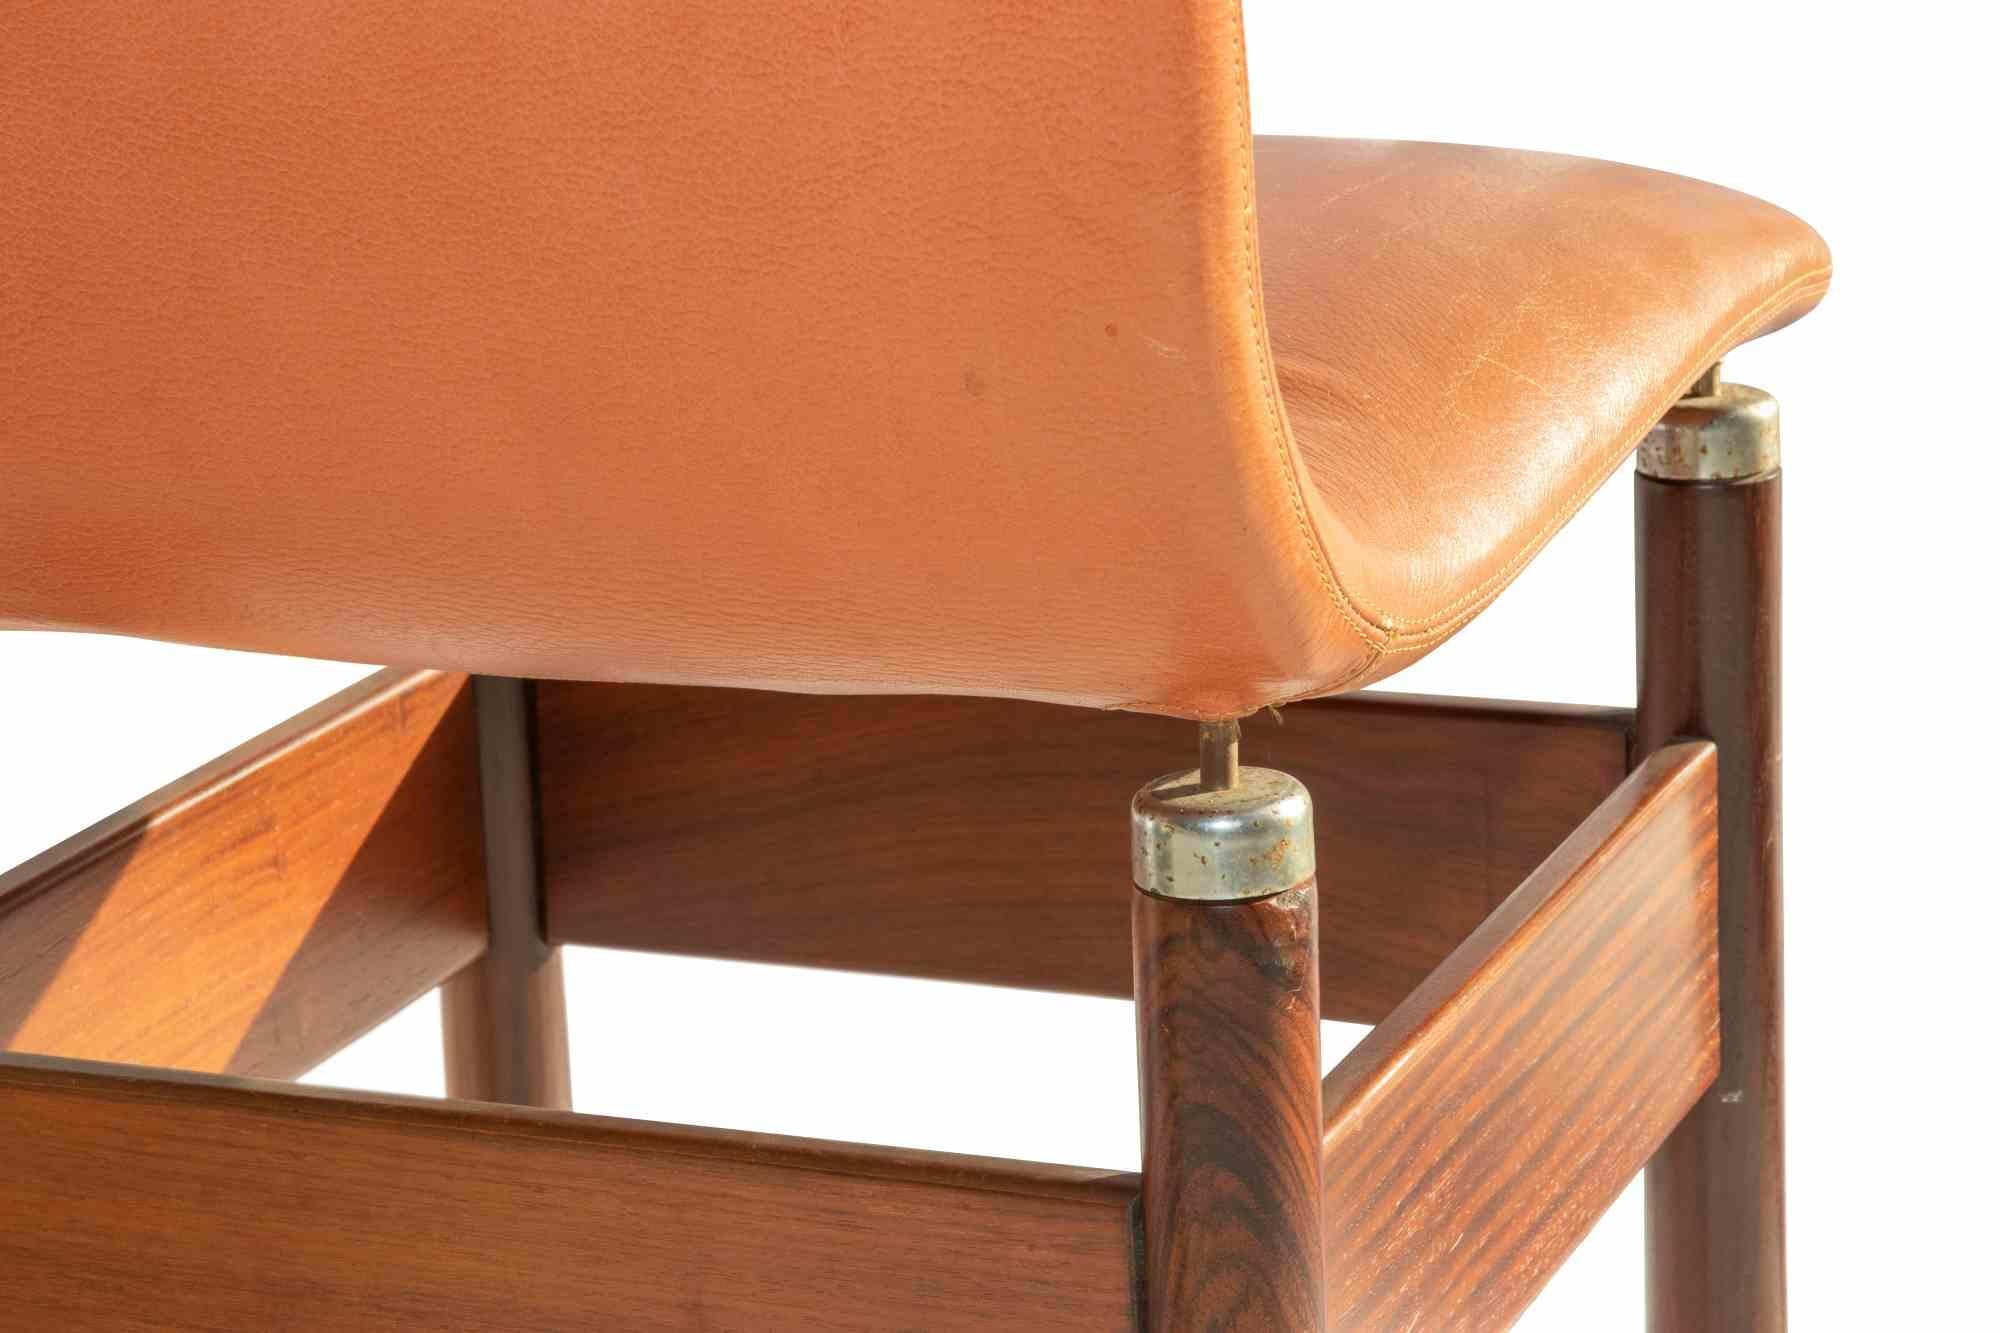 Der Chelsea Chair ist ein Designermöbel von Vittorio Introini für Saporiti aus dem Jahr 1966.

Massivholzgestell mit Ledersitz.

Selten und in gutem Zustand, mit nur geringen Altersspuren.
 